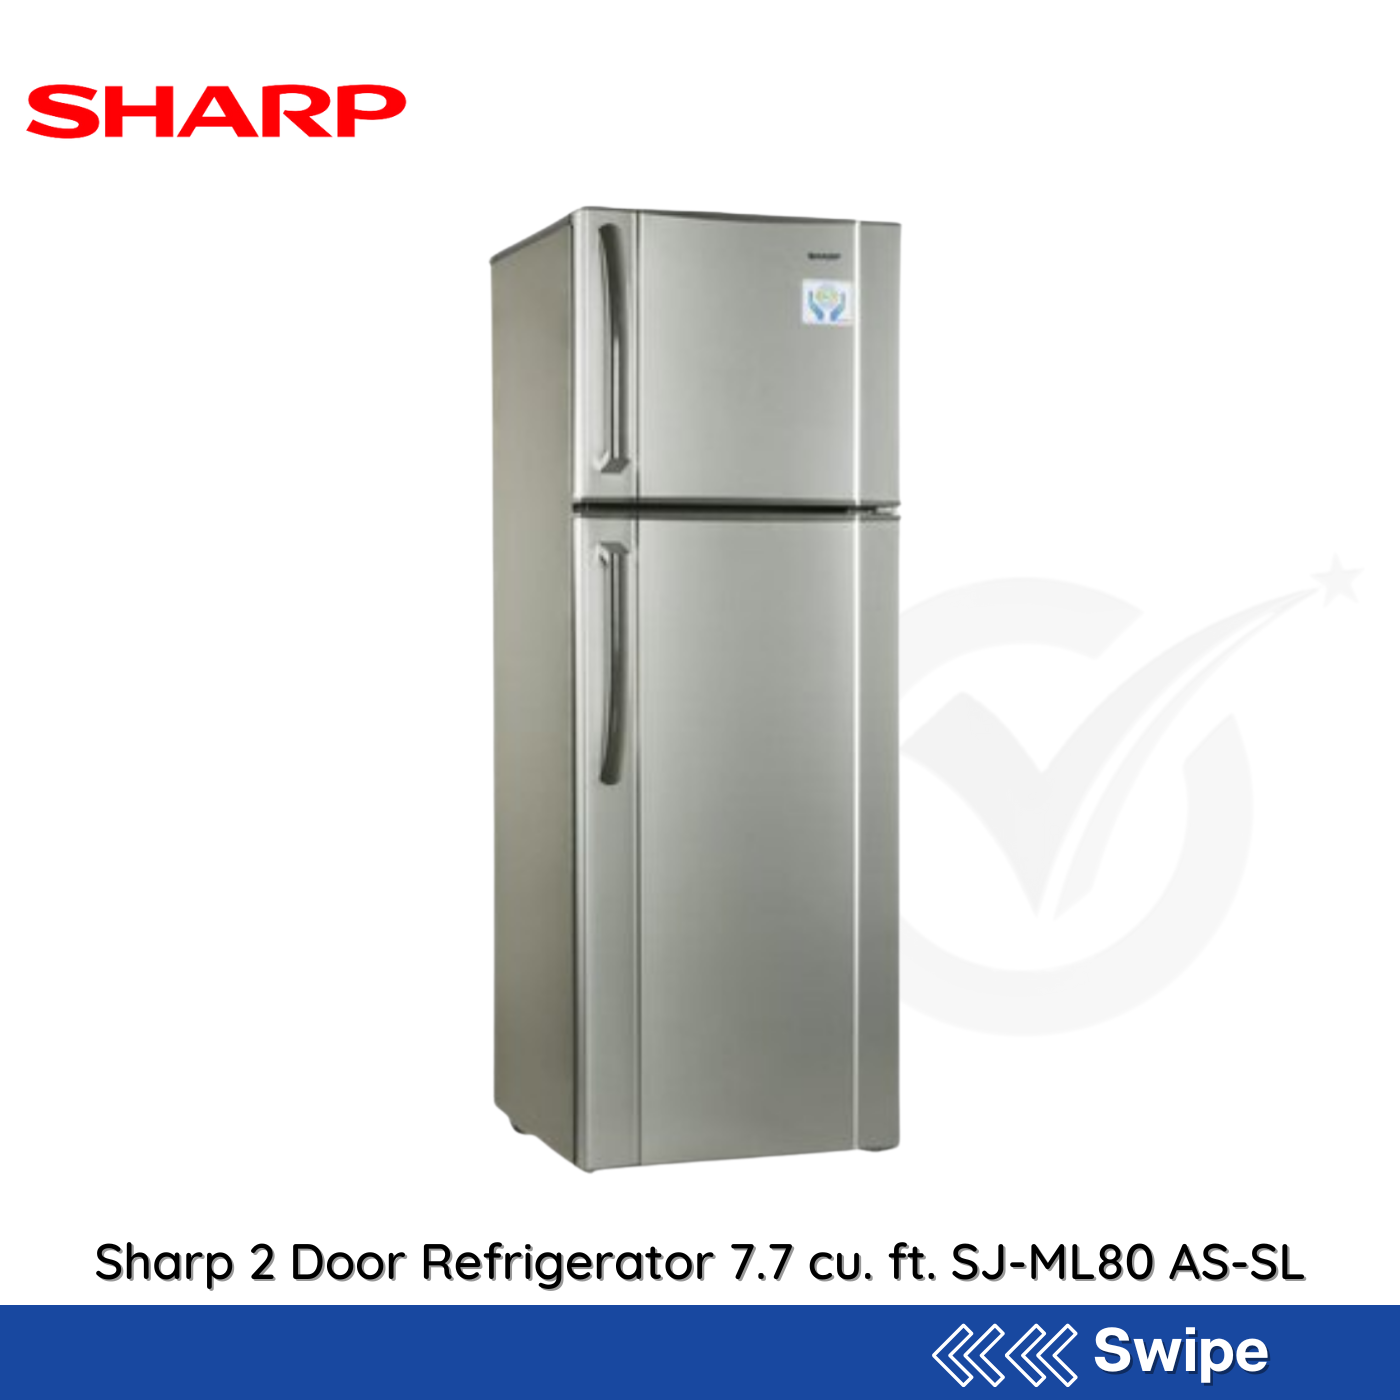 Sharp 2 Door Refrigerator 7.7 cu. ft. SJ-ML80 AS-SL